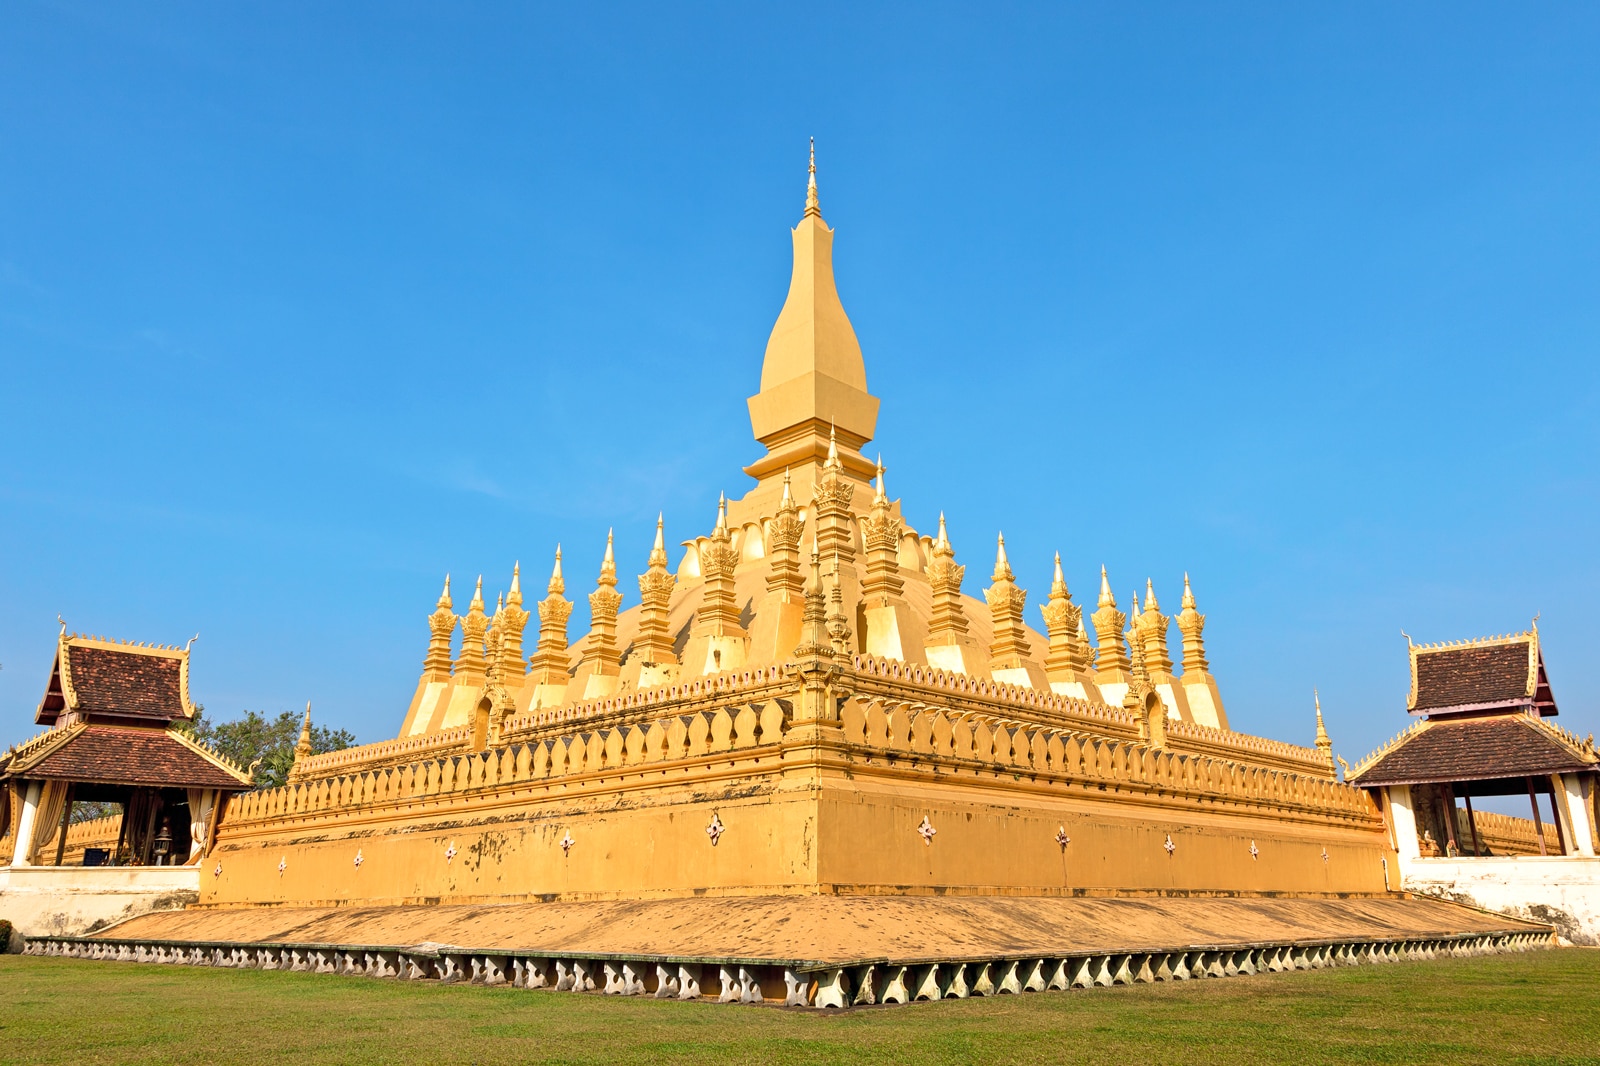 Đây là ngôi chùa được xem như là biểu tượng của đất nước triệu voi, hình ảnh chùa xuất hiện trên tiền và quốc huy của Lào. Chùa That Luang nằm ở thủ đô Viêng Chăn, xây dựng vào năm 1566, được thiết kế mô phỏng hình nậm rượu. Chùa có tòa tháp chính cao 45 mét, hình dáng vươn cao như một mũi tên, chân tháp rộng 90m2. Đỉnh của bảo tháp được phủ 500 kg vàng lá, biểu tượng cho sự huy hoàng của Lào. 